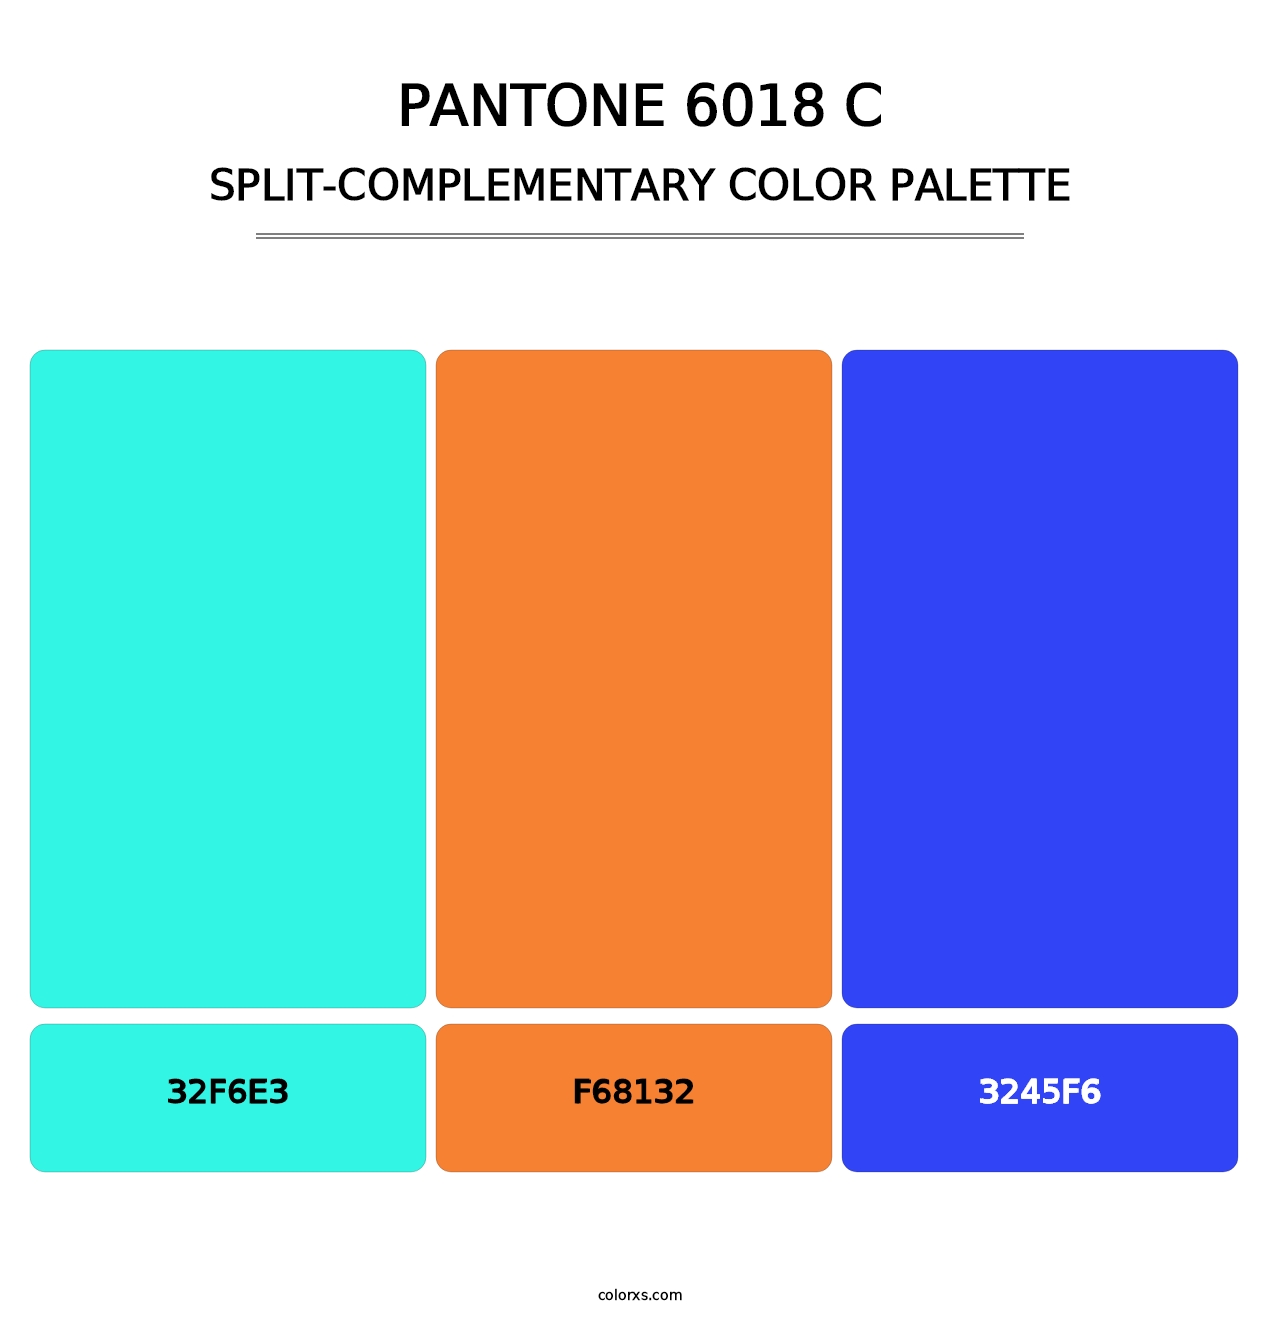 PANTONE 6018 C - Split-Complementary Color Palette